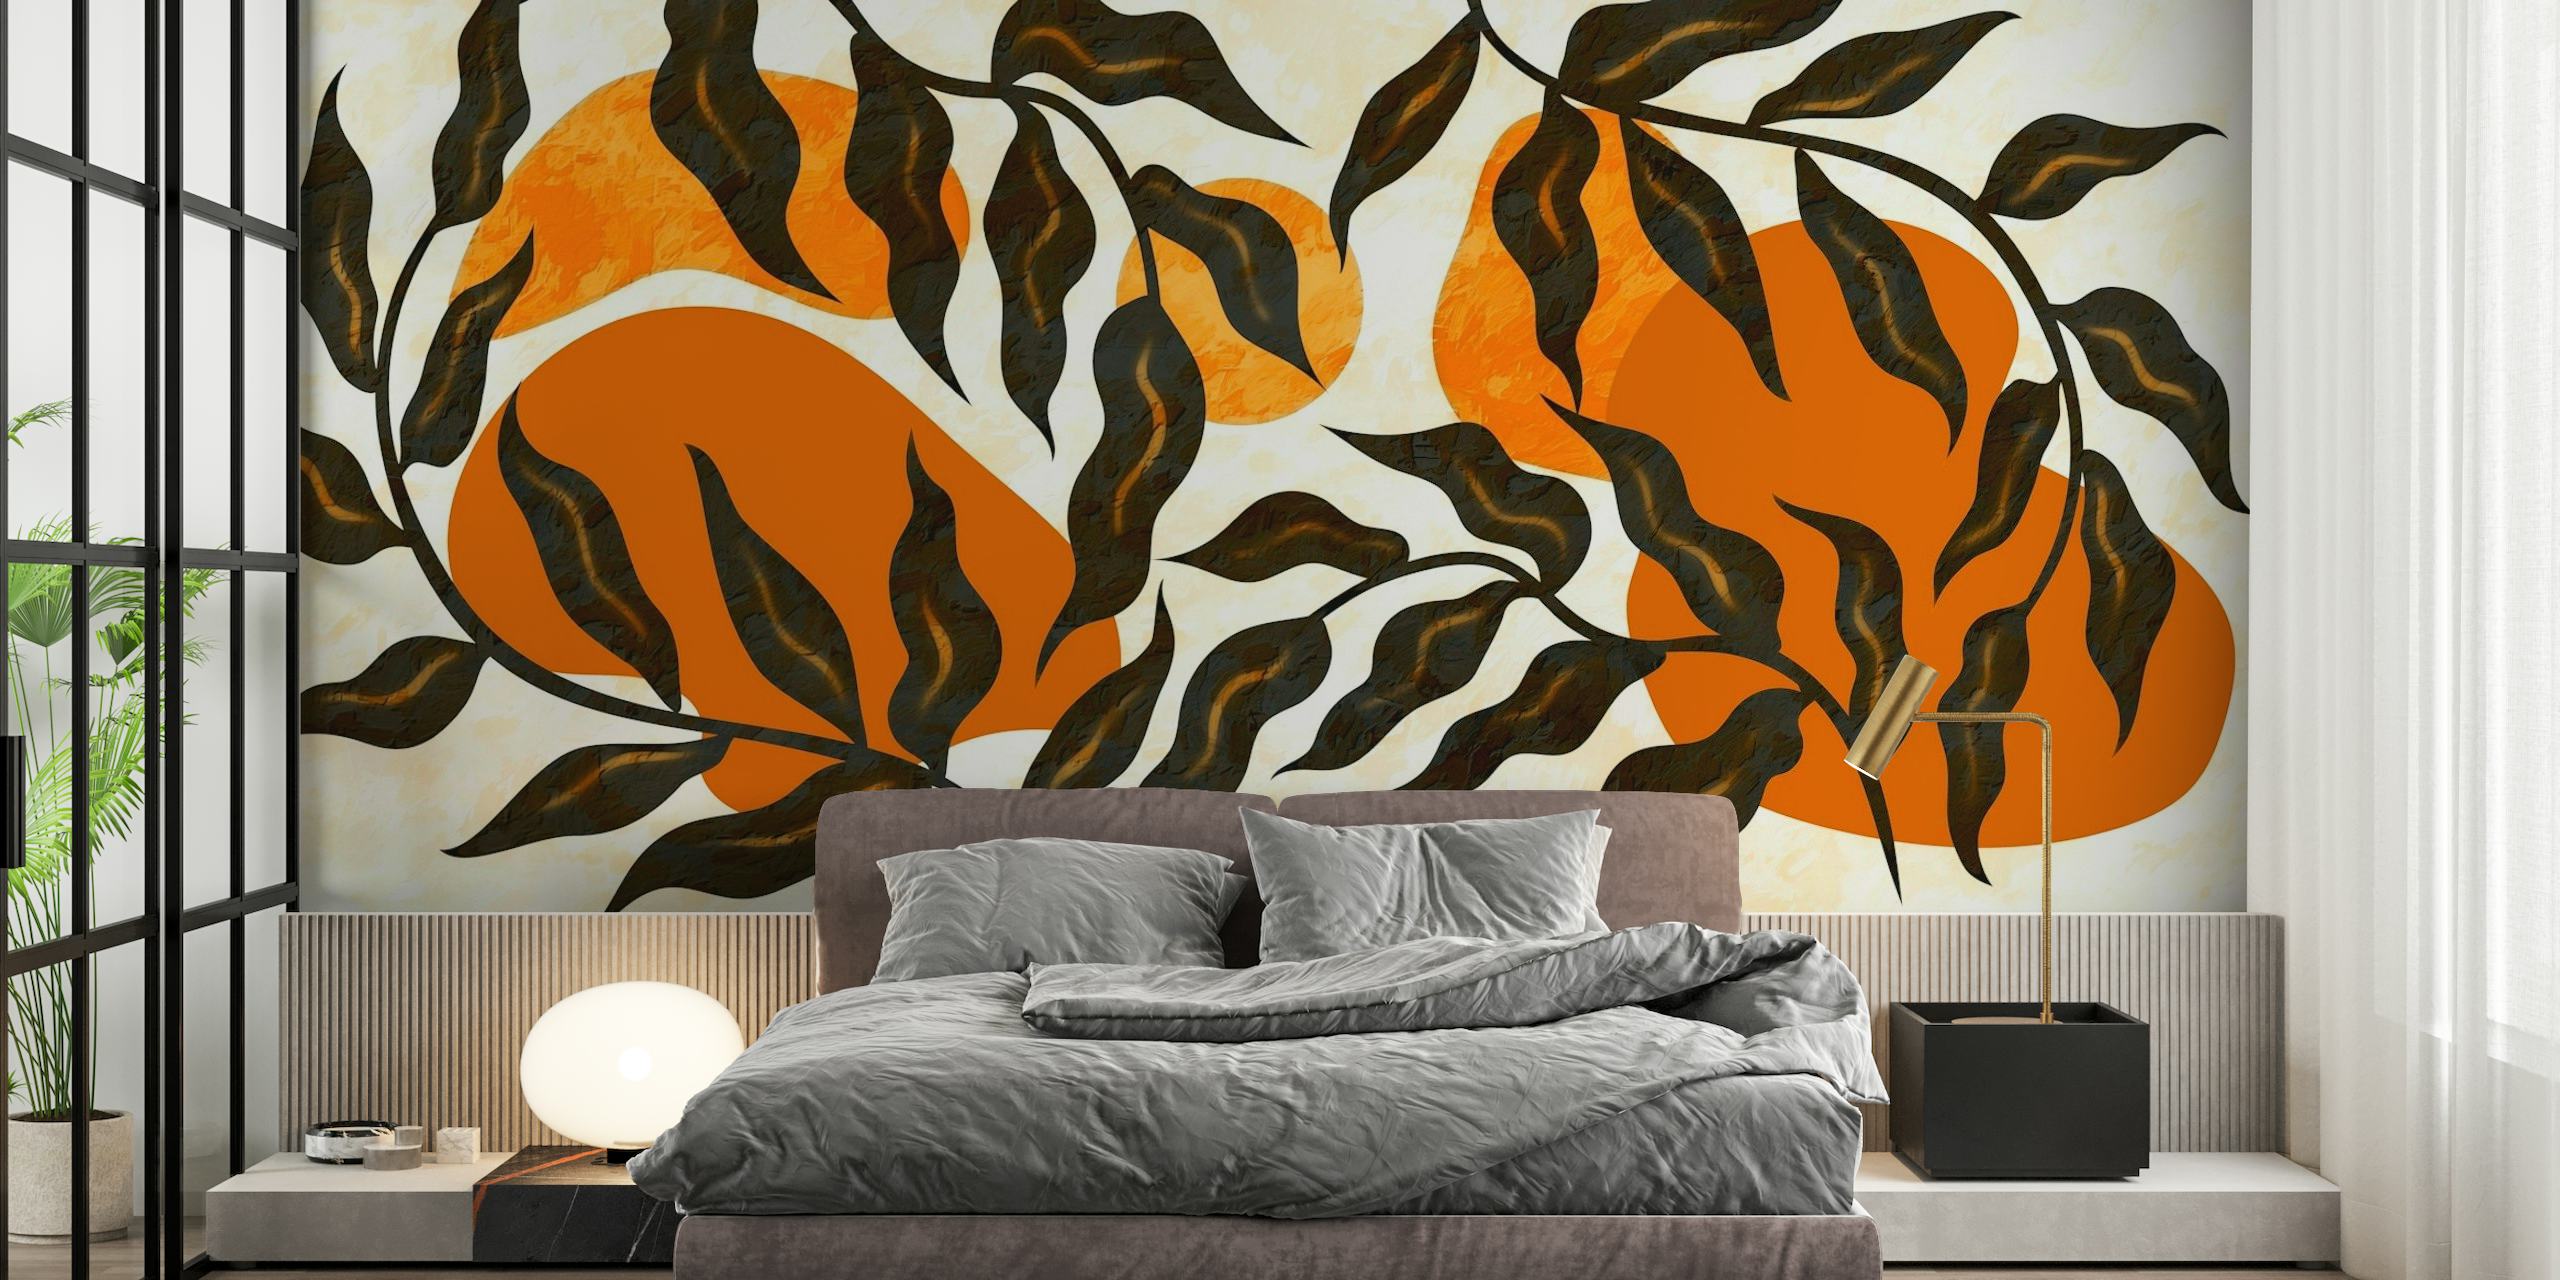 Papier peint Sunrise Luxury Leaves avec des motifs botaniques chauds d'abricot et de noir